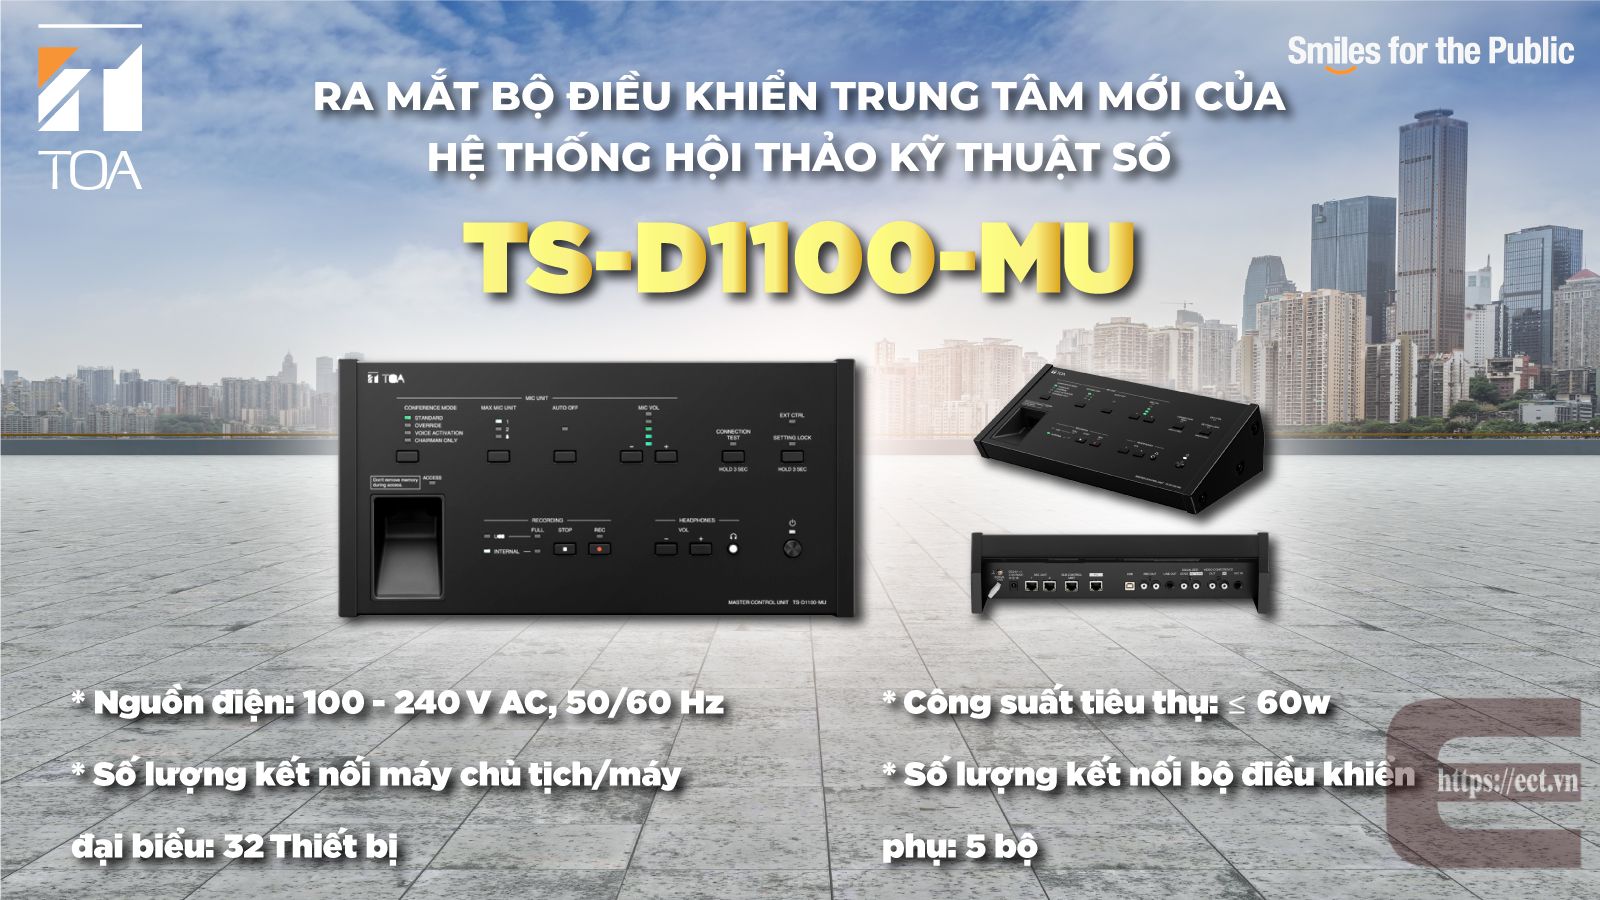 TS-D1100-MU bộ trung tâm hội thảo mới trong hệ thống hội thảo có dây TS-D1000